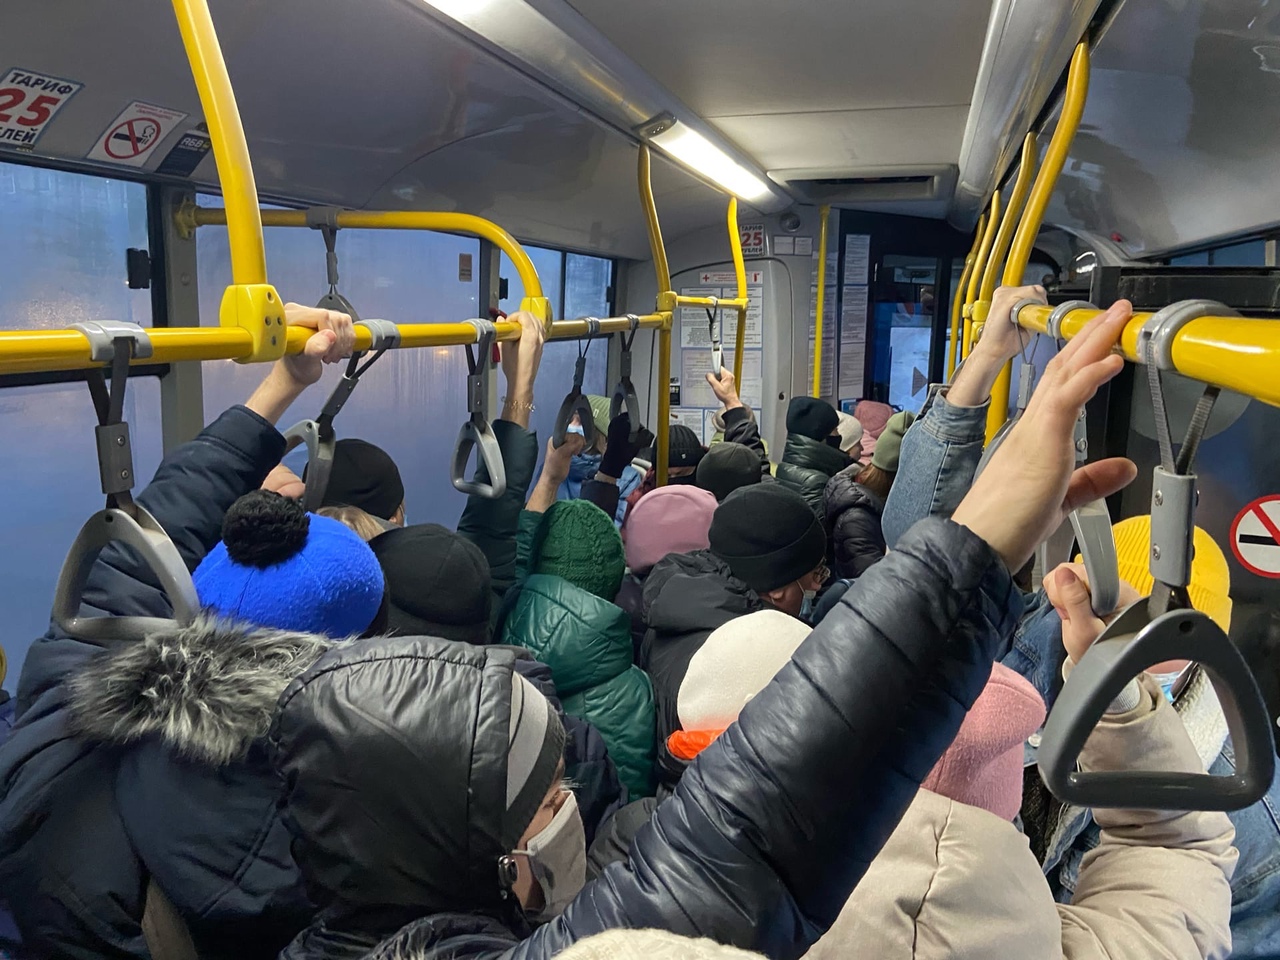 Aif ru society. Автобус. Общественный транспорт в час пик. Люди в переполненном автобусе. Новый троллейбус.